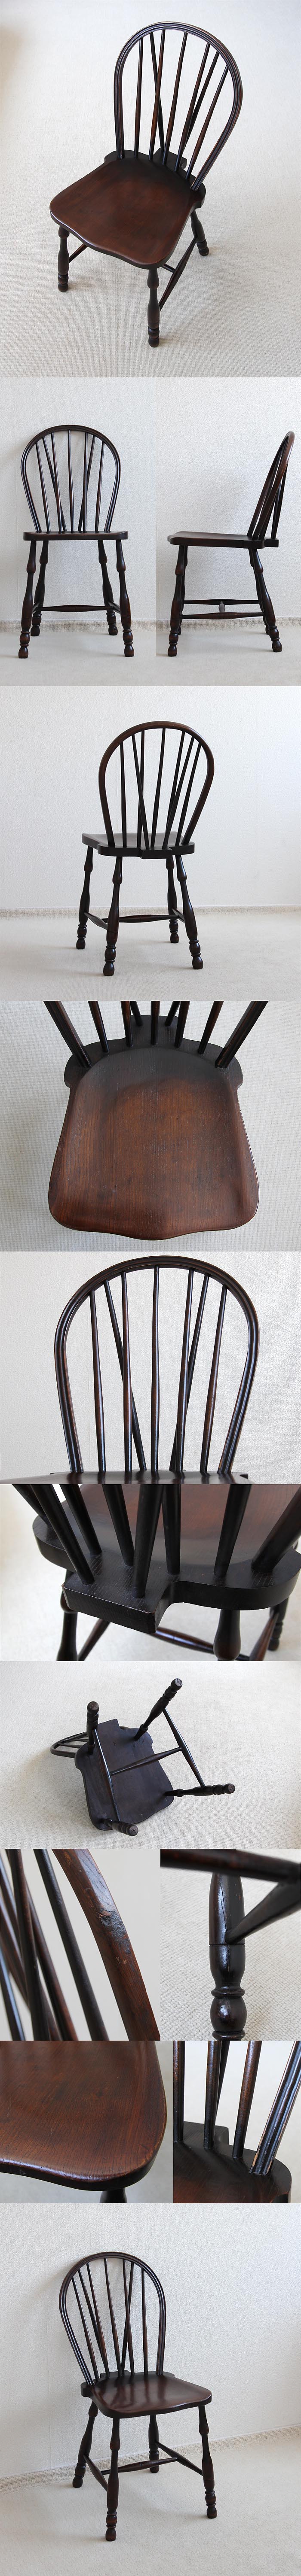 イギリス アンティーク キッチンチェア 木製椅子 ウィンザー 無垢材 家具「ボウバックチェア」V-662